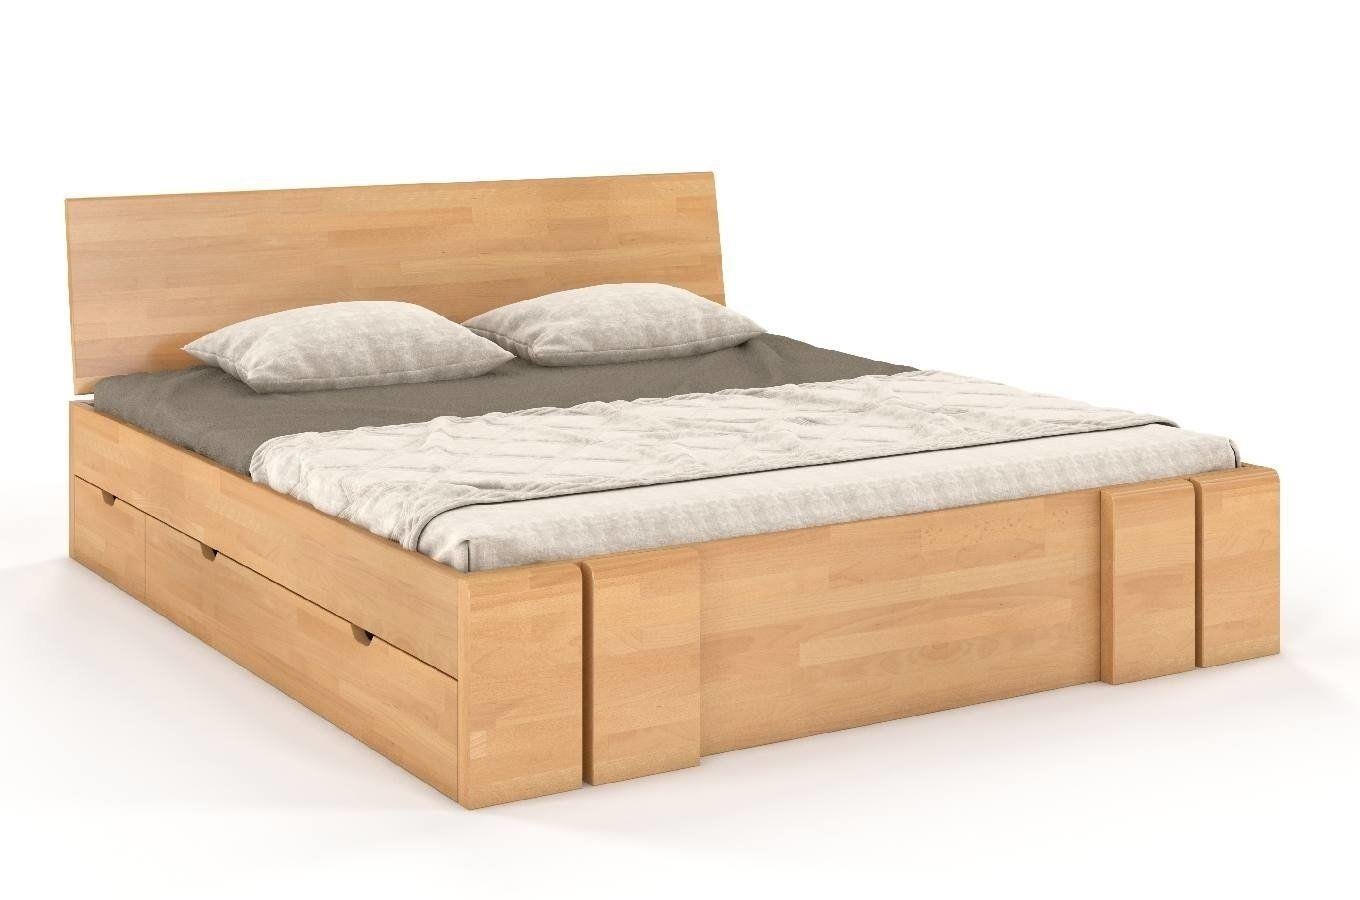 Łóżko drewniane bukowe z szufladami Skandica VESTRE Maxi & DR / 160x200 cm, kolor naturalny